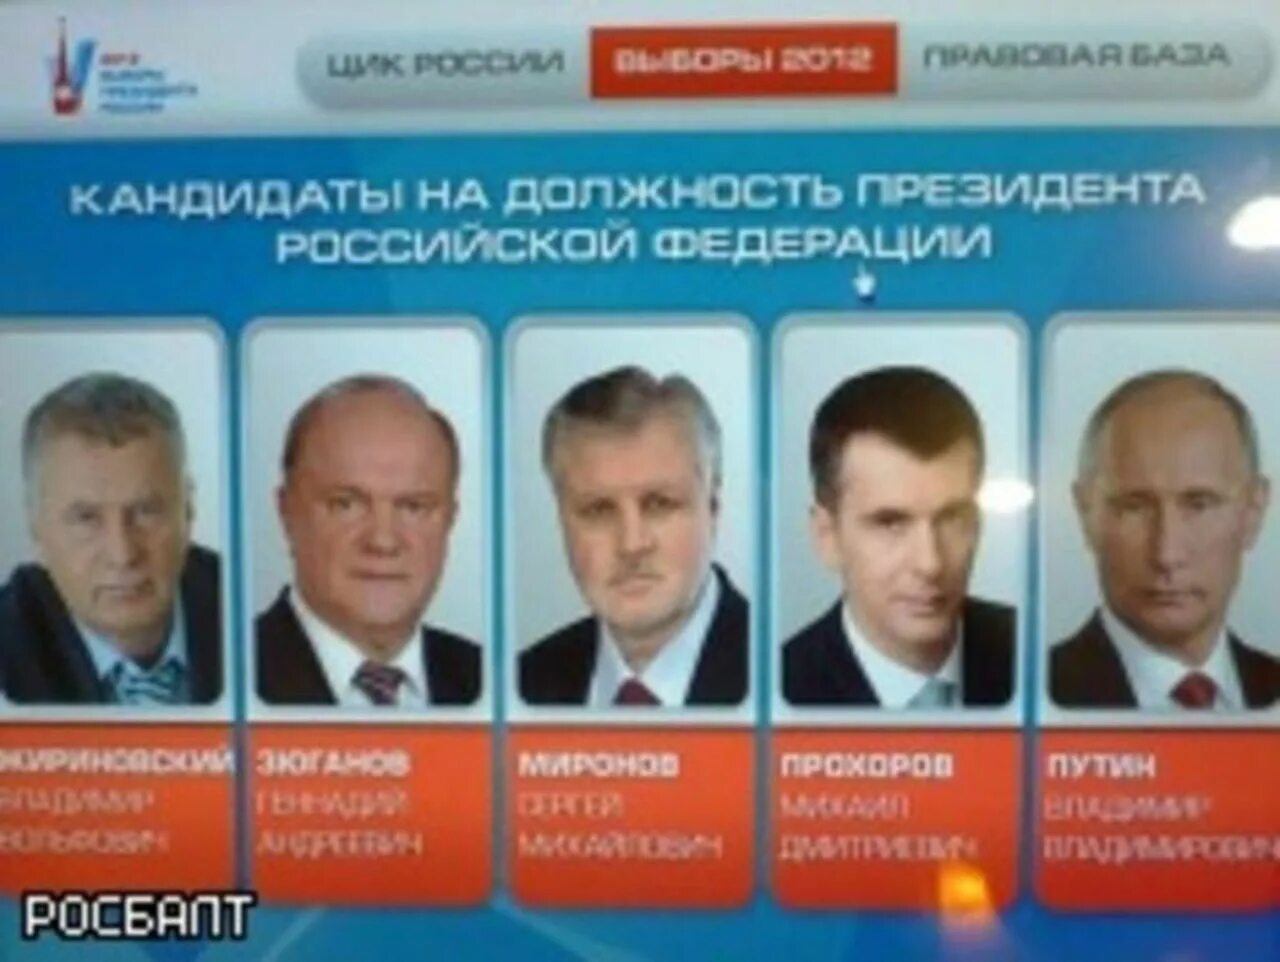 Сколько раз можно баллотироваться. Выборы президента 2012 кандидаты. Выборы 2012 года в России кандидаты.